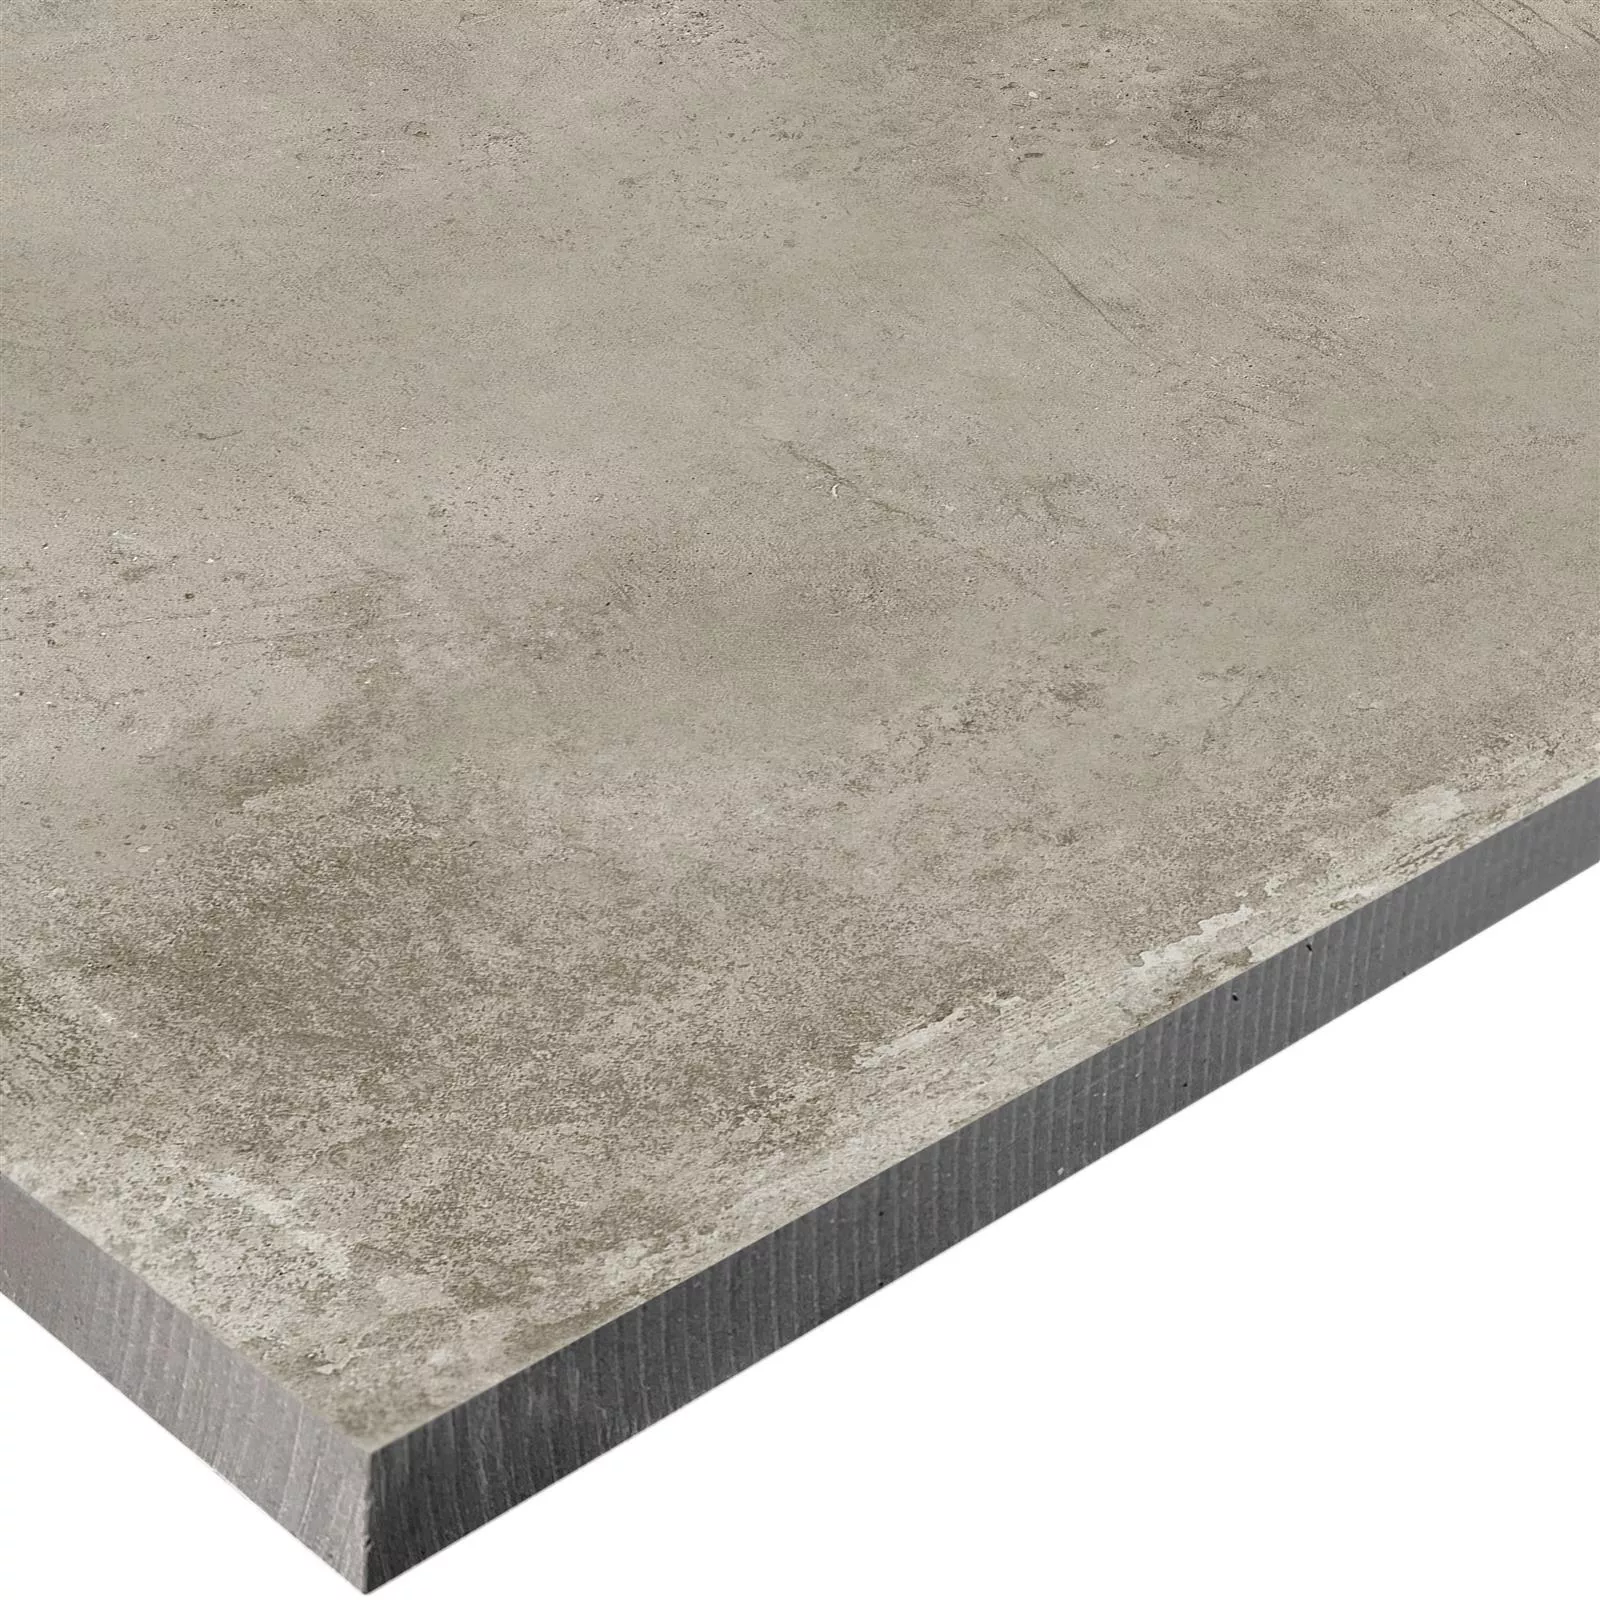 Sample Terrace Tiles Cement Optic Berlin Beige 100x100cm